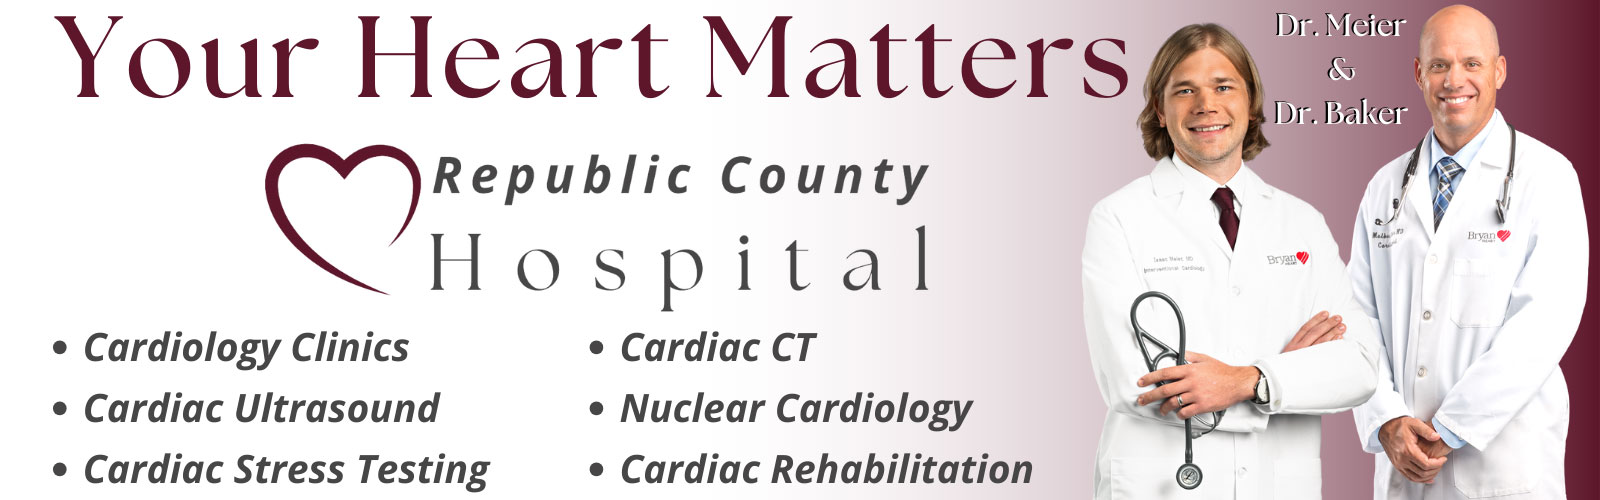 Your Heart Matters
• Cardiology Clinics
• Cardiac Ultrasound
• Cardiac Stress Testing
• Cardiac CT
• Nuclear Cardiology
• Cardiac Rehabilitation 

Dr. Meler and Dr. Baker